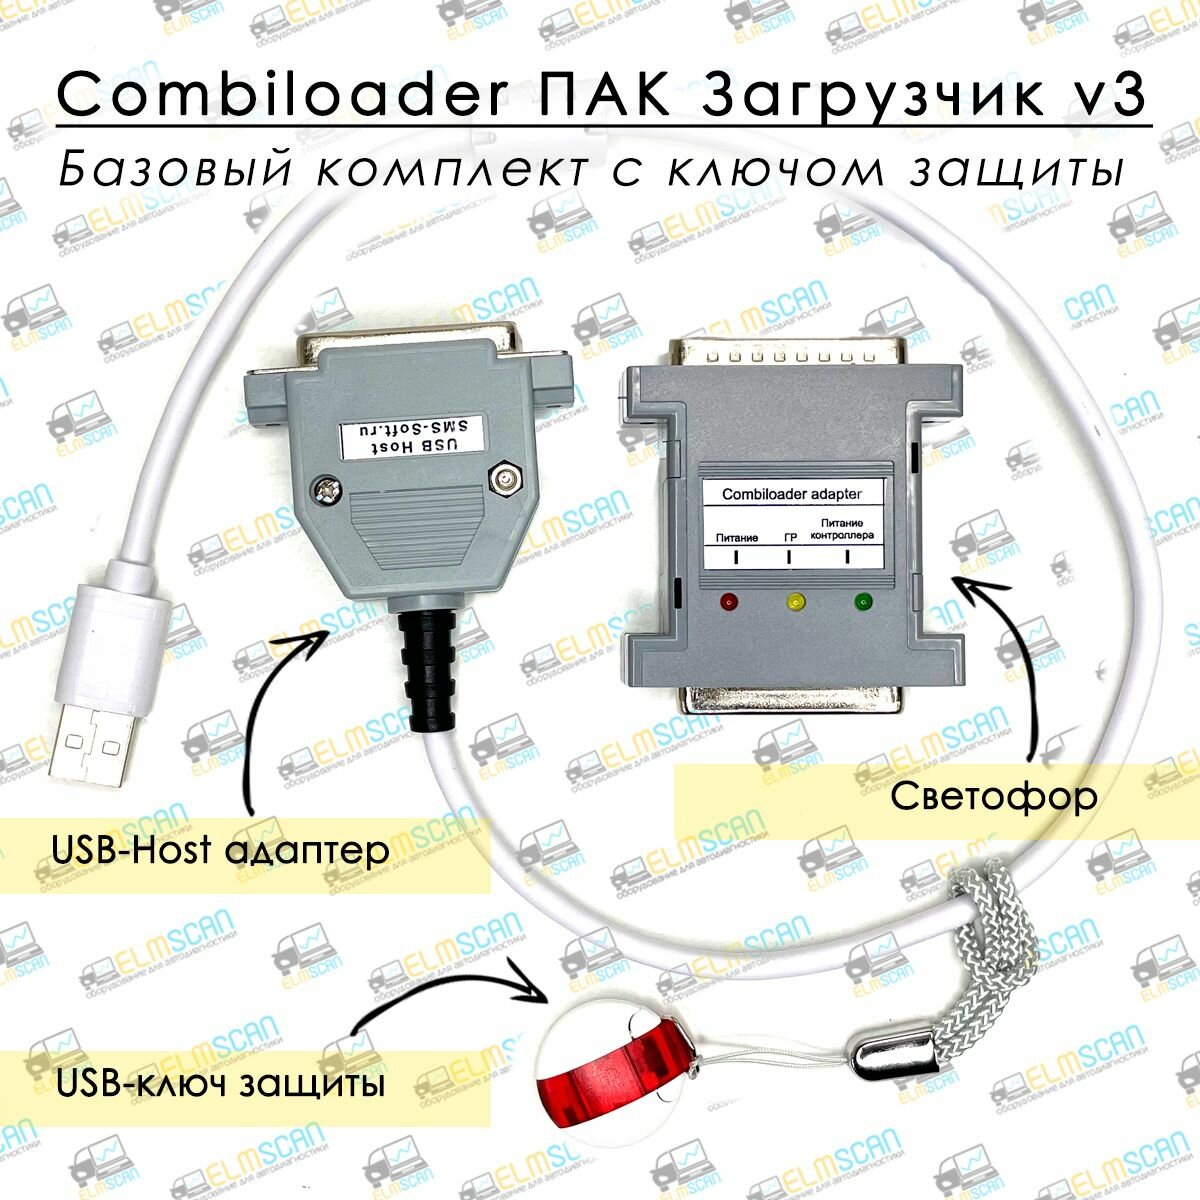 Combiloader (ПАК Загрузчик v.3) - Базовый комплект